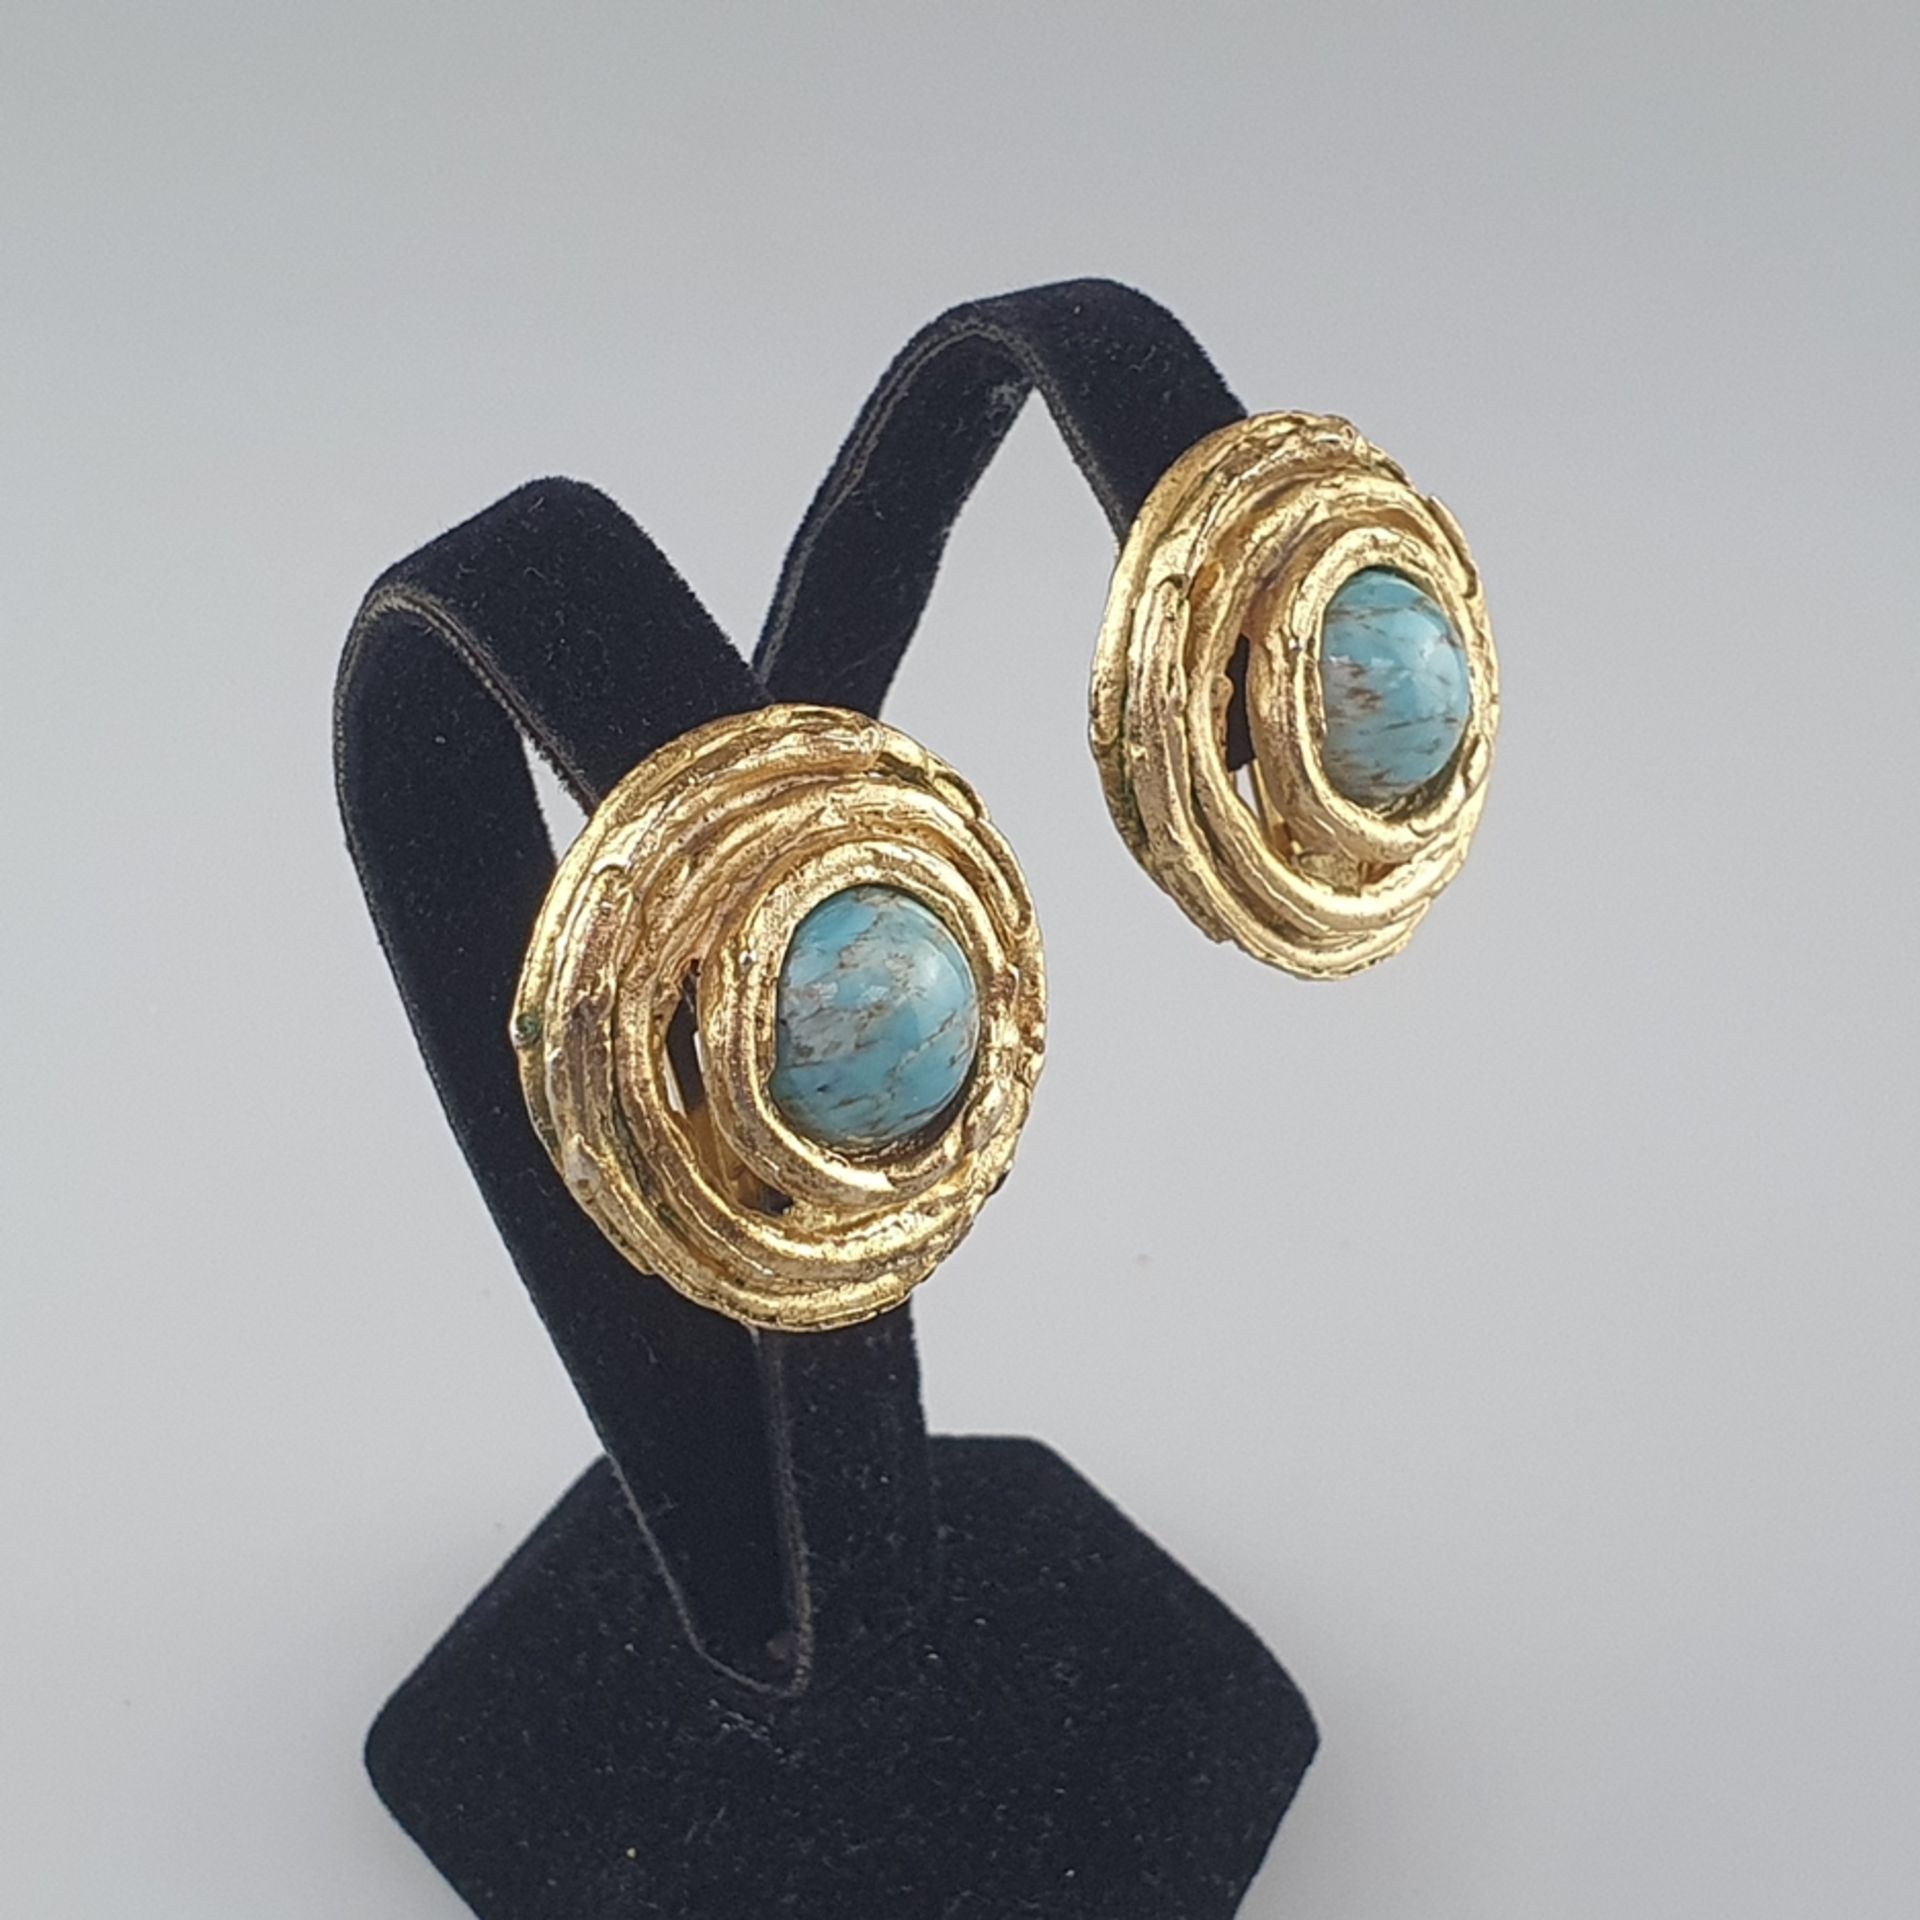 Ein Paar Vintage-Ohrclips - Orena / Frankreich, goldfarbenes Metall mit künstlichen Türkiscabochons - Image 2 of 5